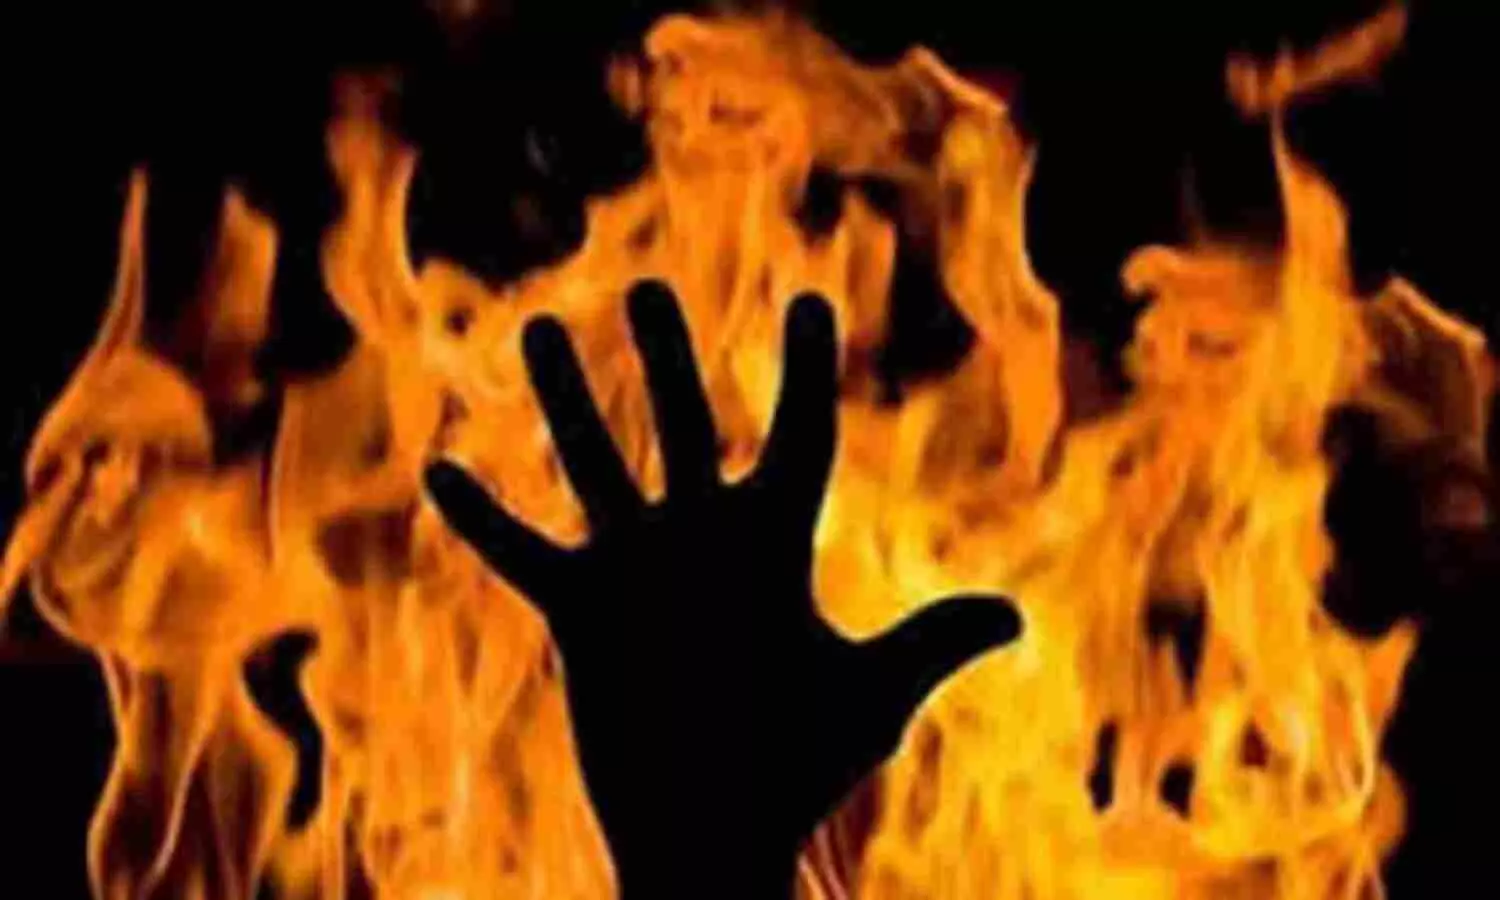 Ghaziabad News: छात्र ने पेट्रोल डालकर खुद को लगाई आग, परीक्षा के दबाव में आत्महत्या की कोशिश